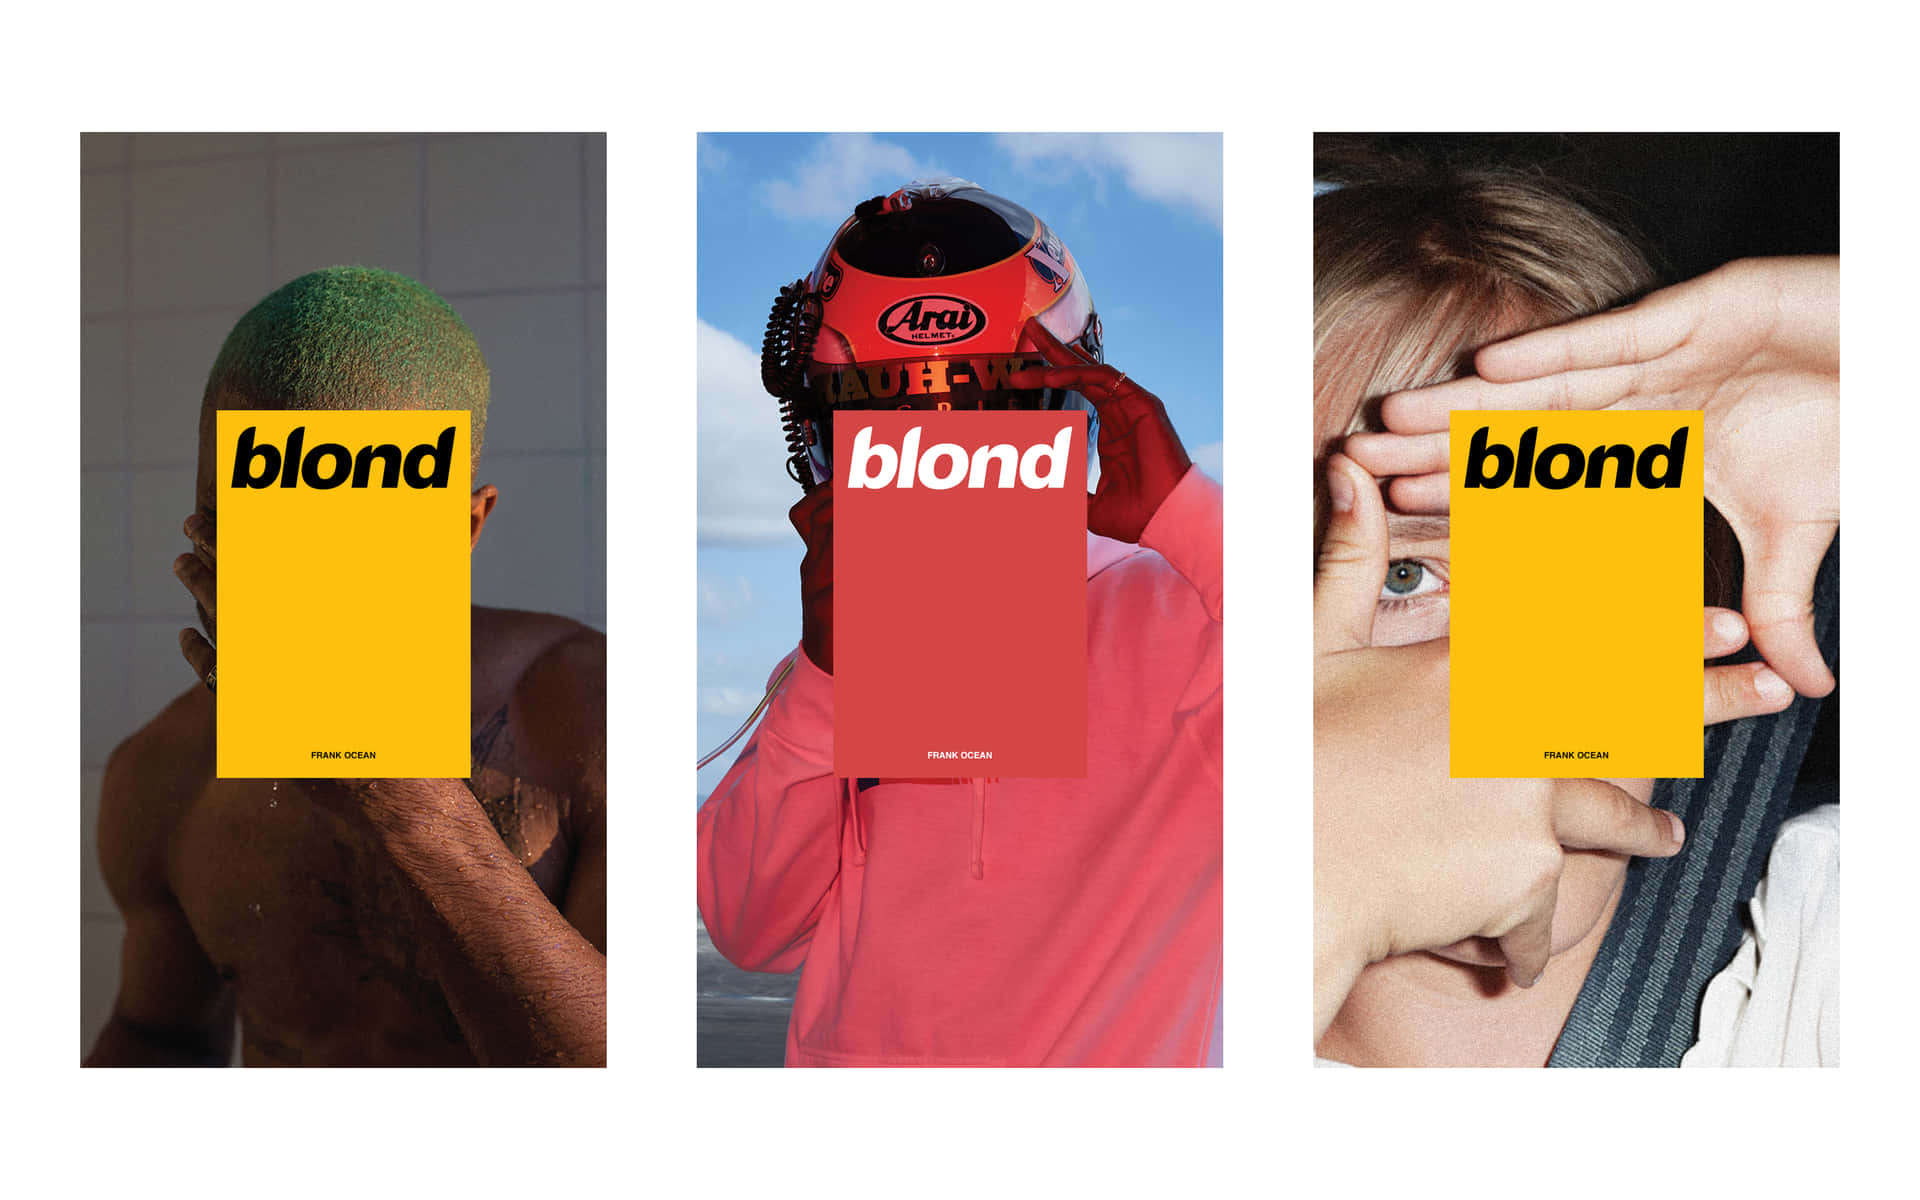 Unprimer Plano Del Artista De R&b Frank Ocean De Su Álbum Blonde. Fondo de pantalla